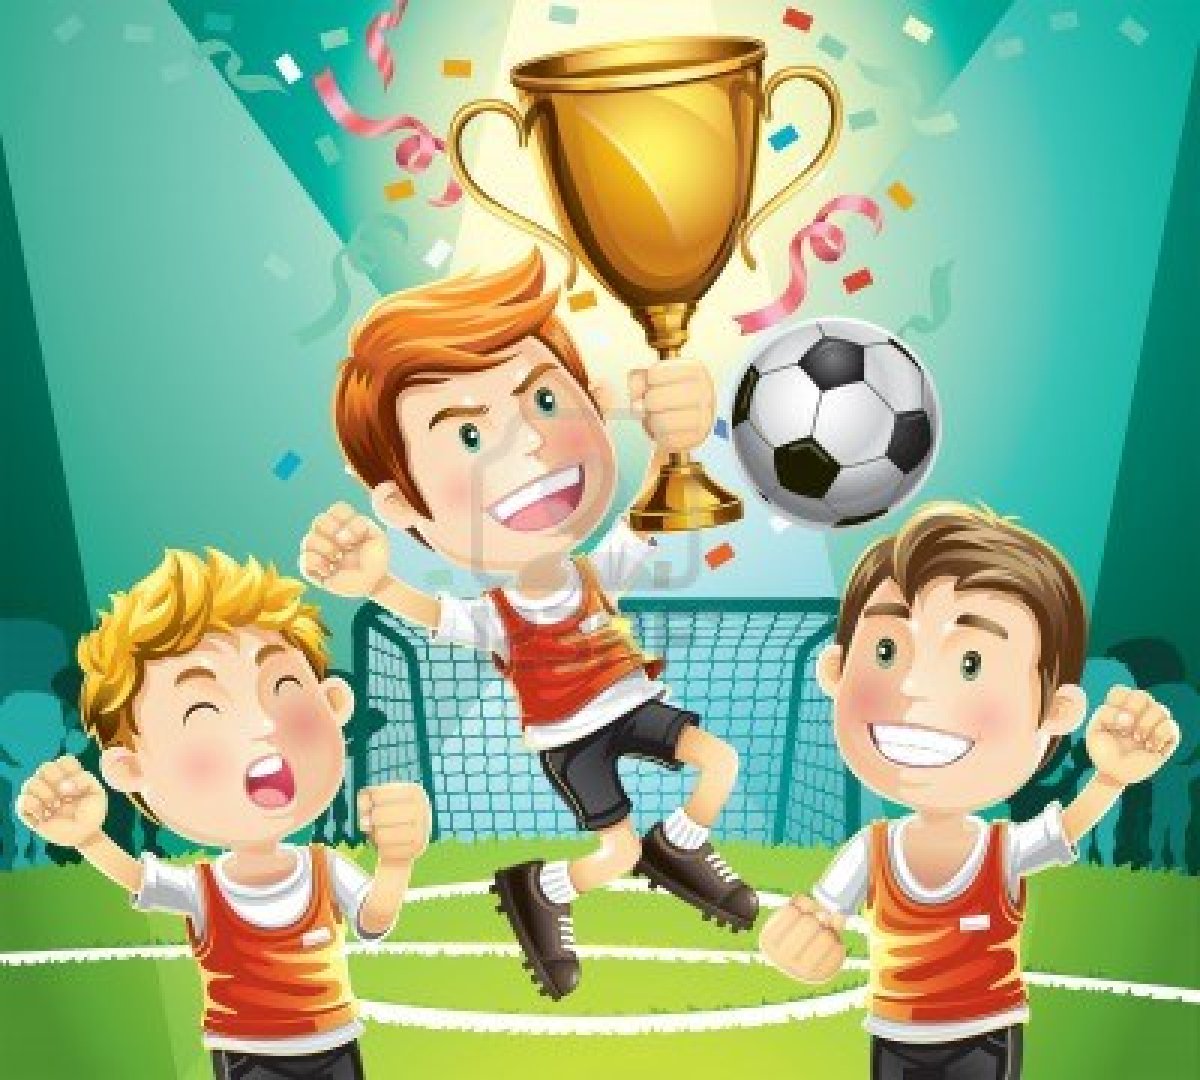 http://3.bp.blogspot.com/-j8LeIYrww6Y/UNUbHMx6YKI/AAAAAAAAAQM/E7o3WowKf2s/s1600/14163014-los-ninos-de-futbol-campeon-con-caracter-de-ganadores-del-trofeo-deportivo-de-dibujos-animados.jpg